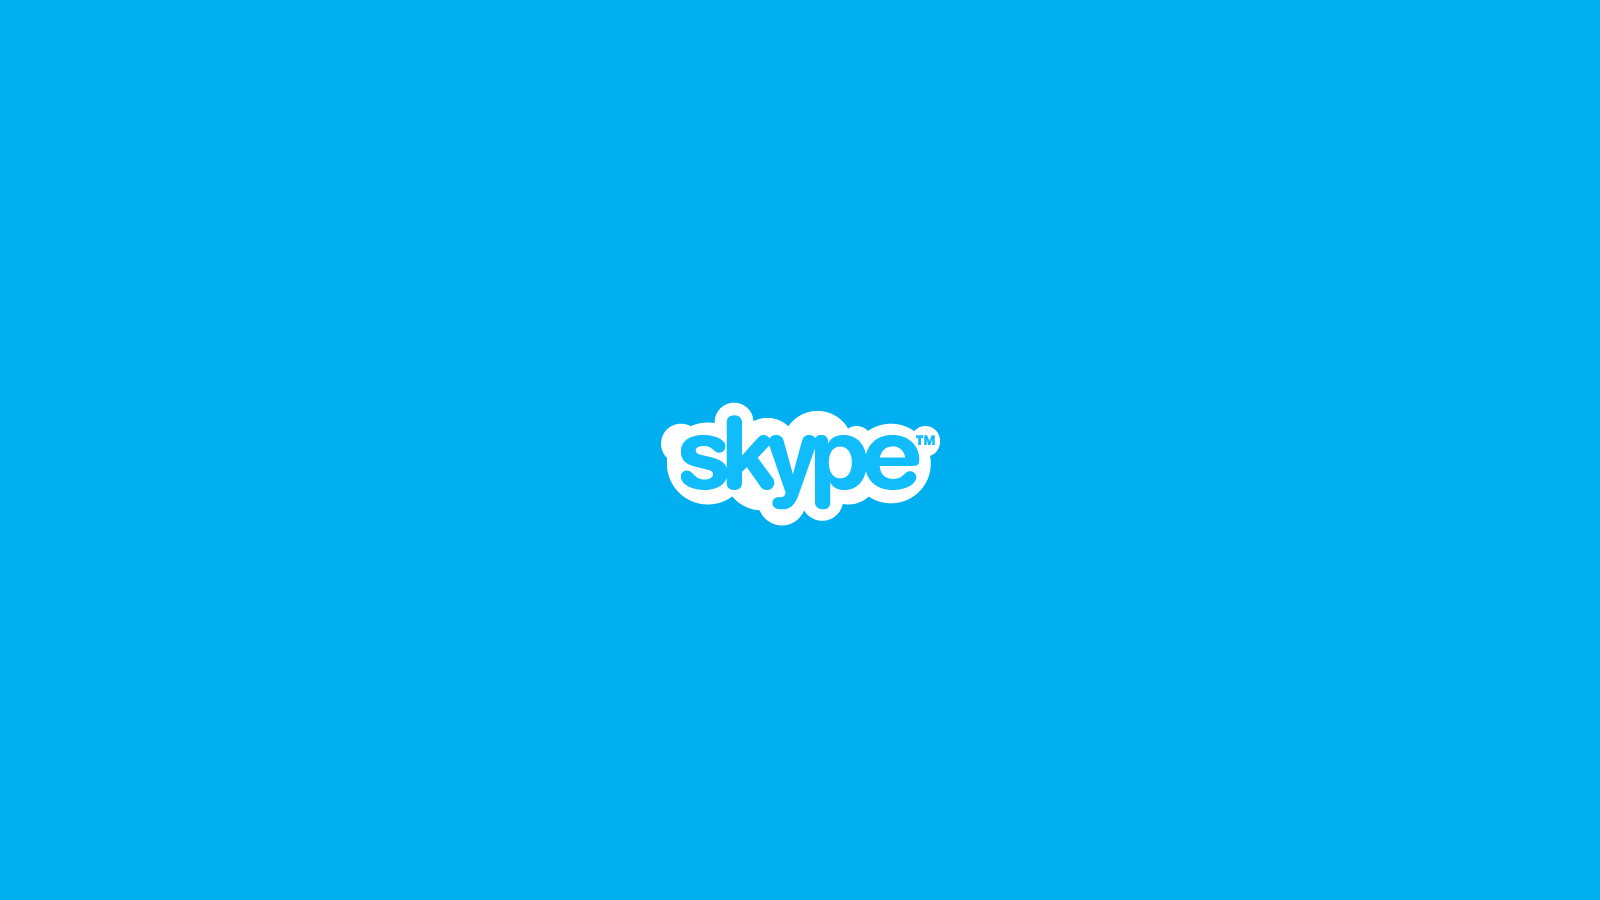 Skype Wallpapers - Wallpaper Cave